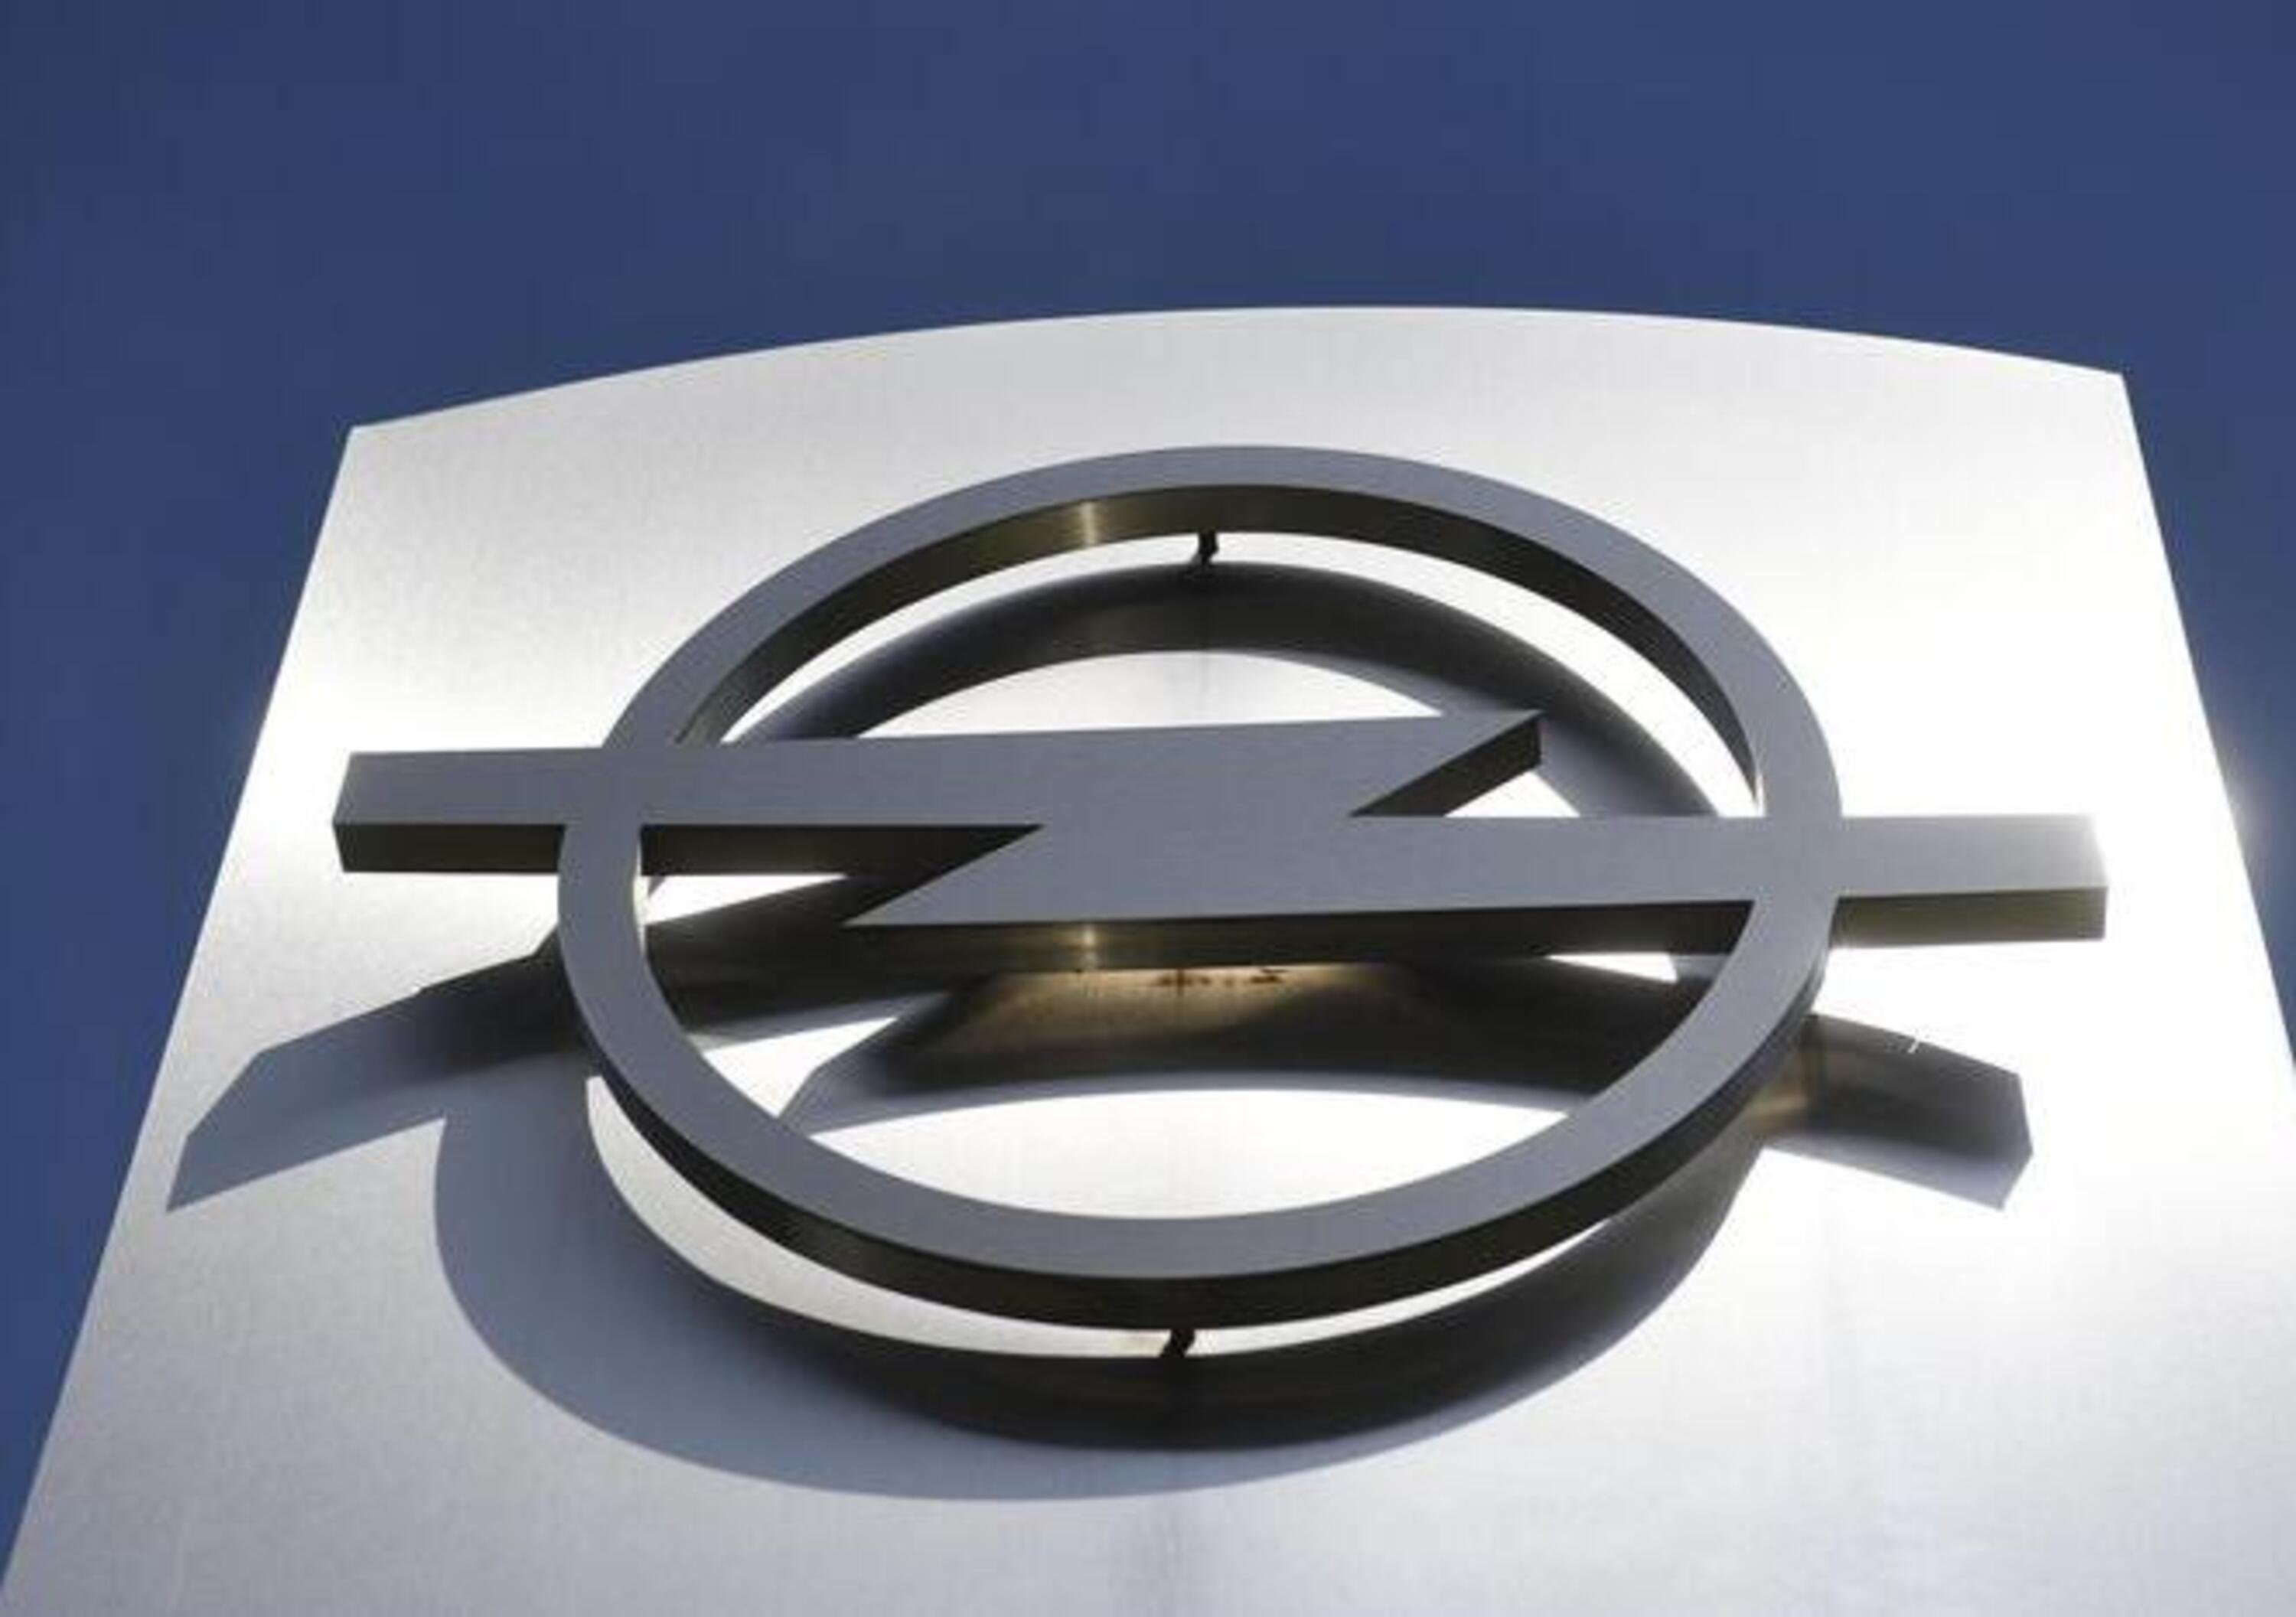 Opel risponde alle accuse di KBA: &laquo;I nostri veicoli rispettano le norme&raquo; 